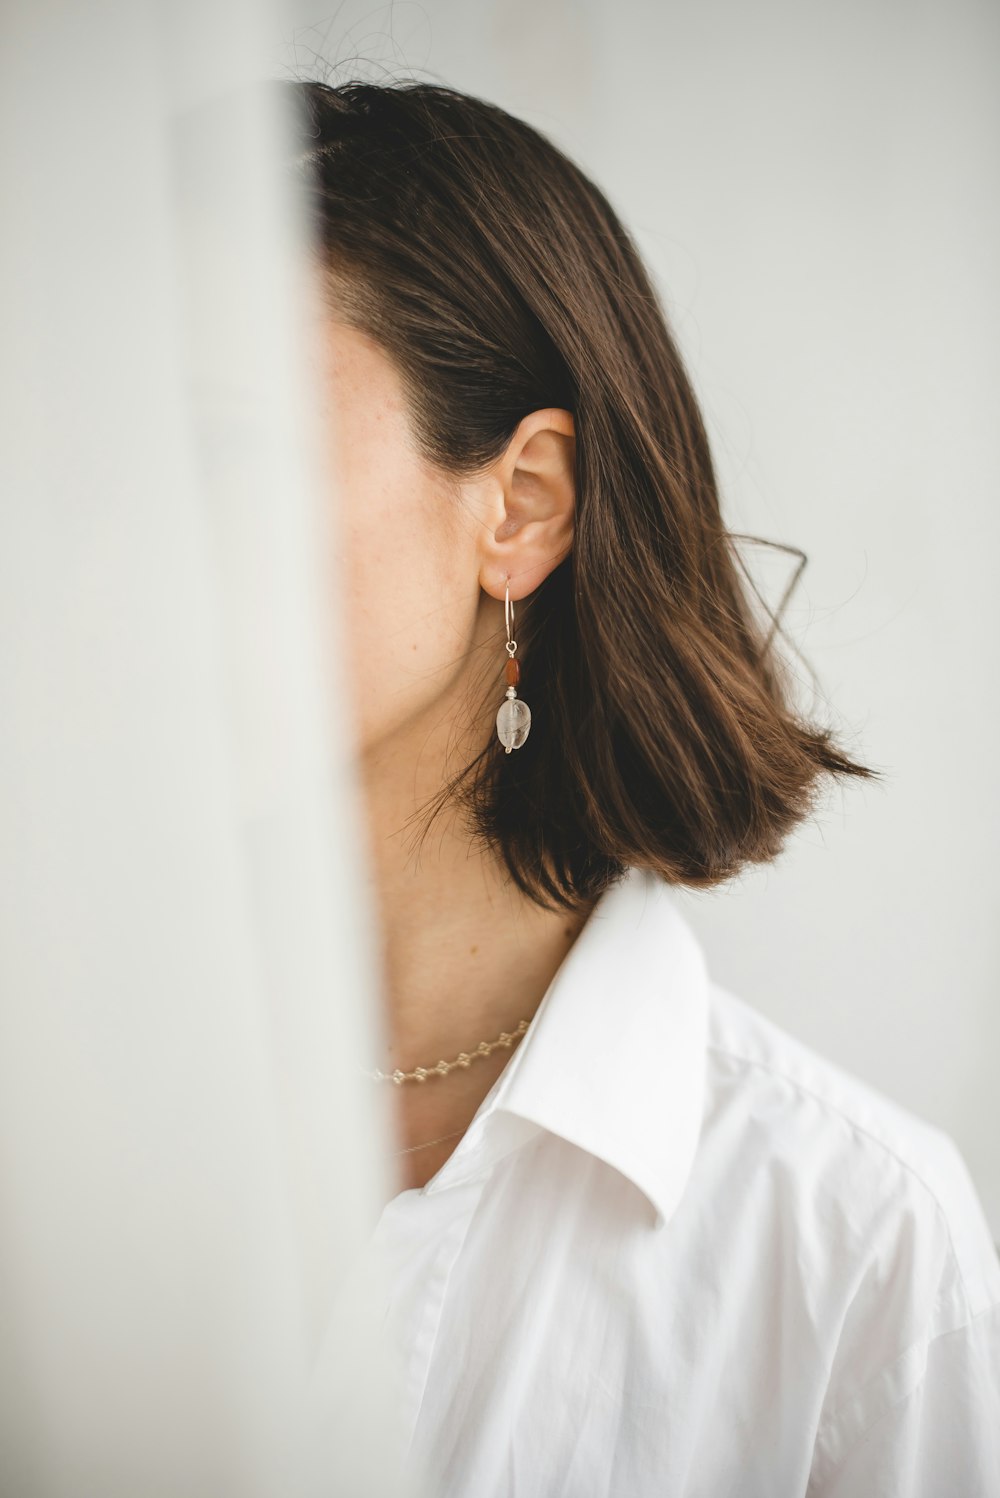 woman in white shirt wearing silver earrings